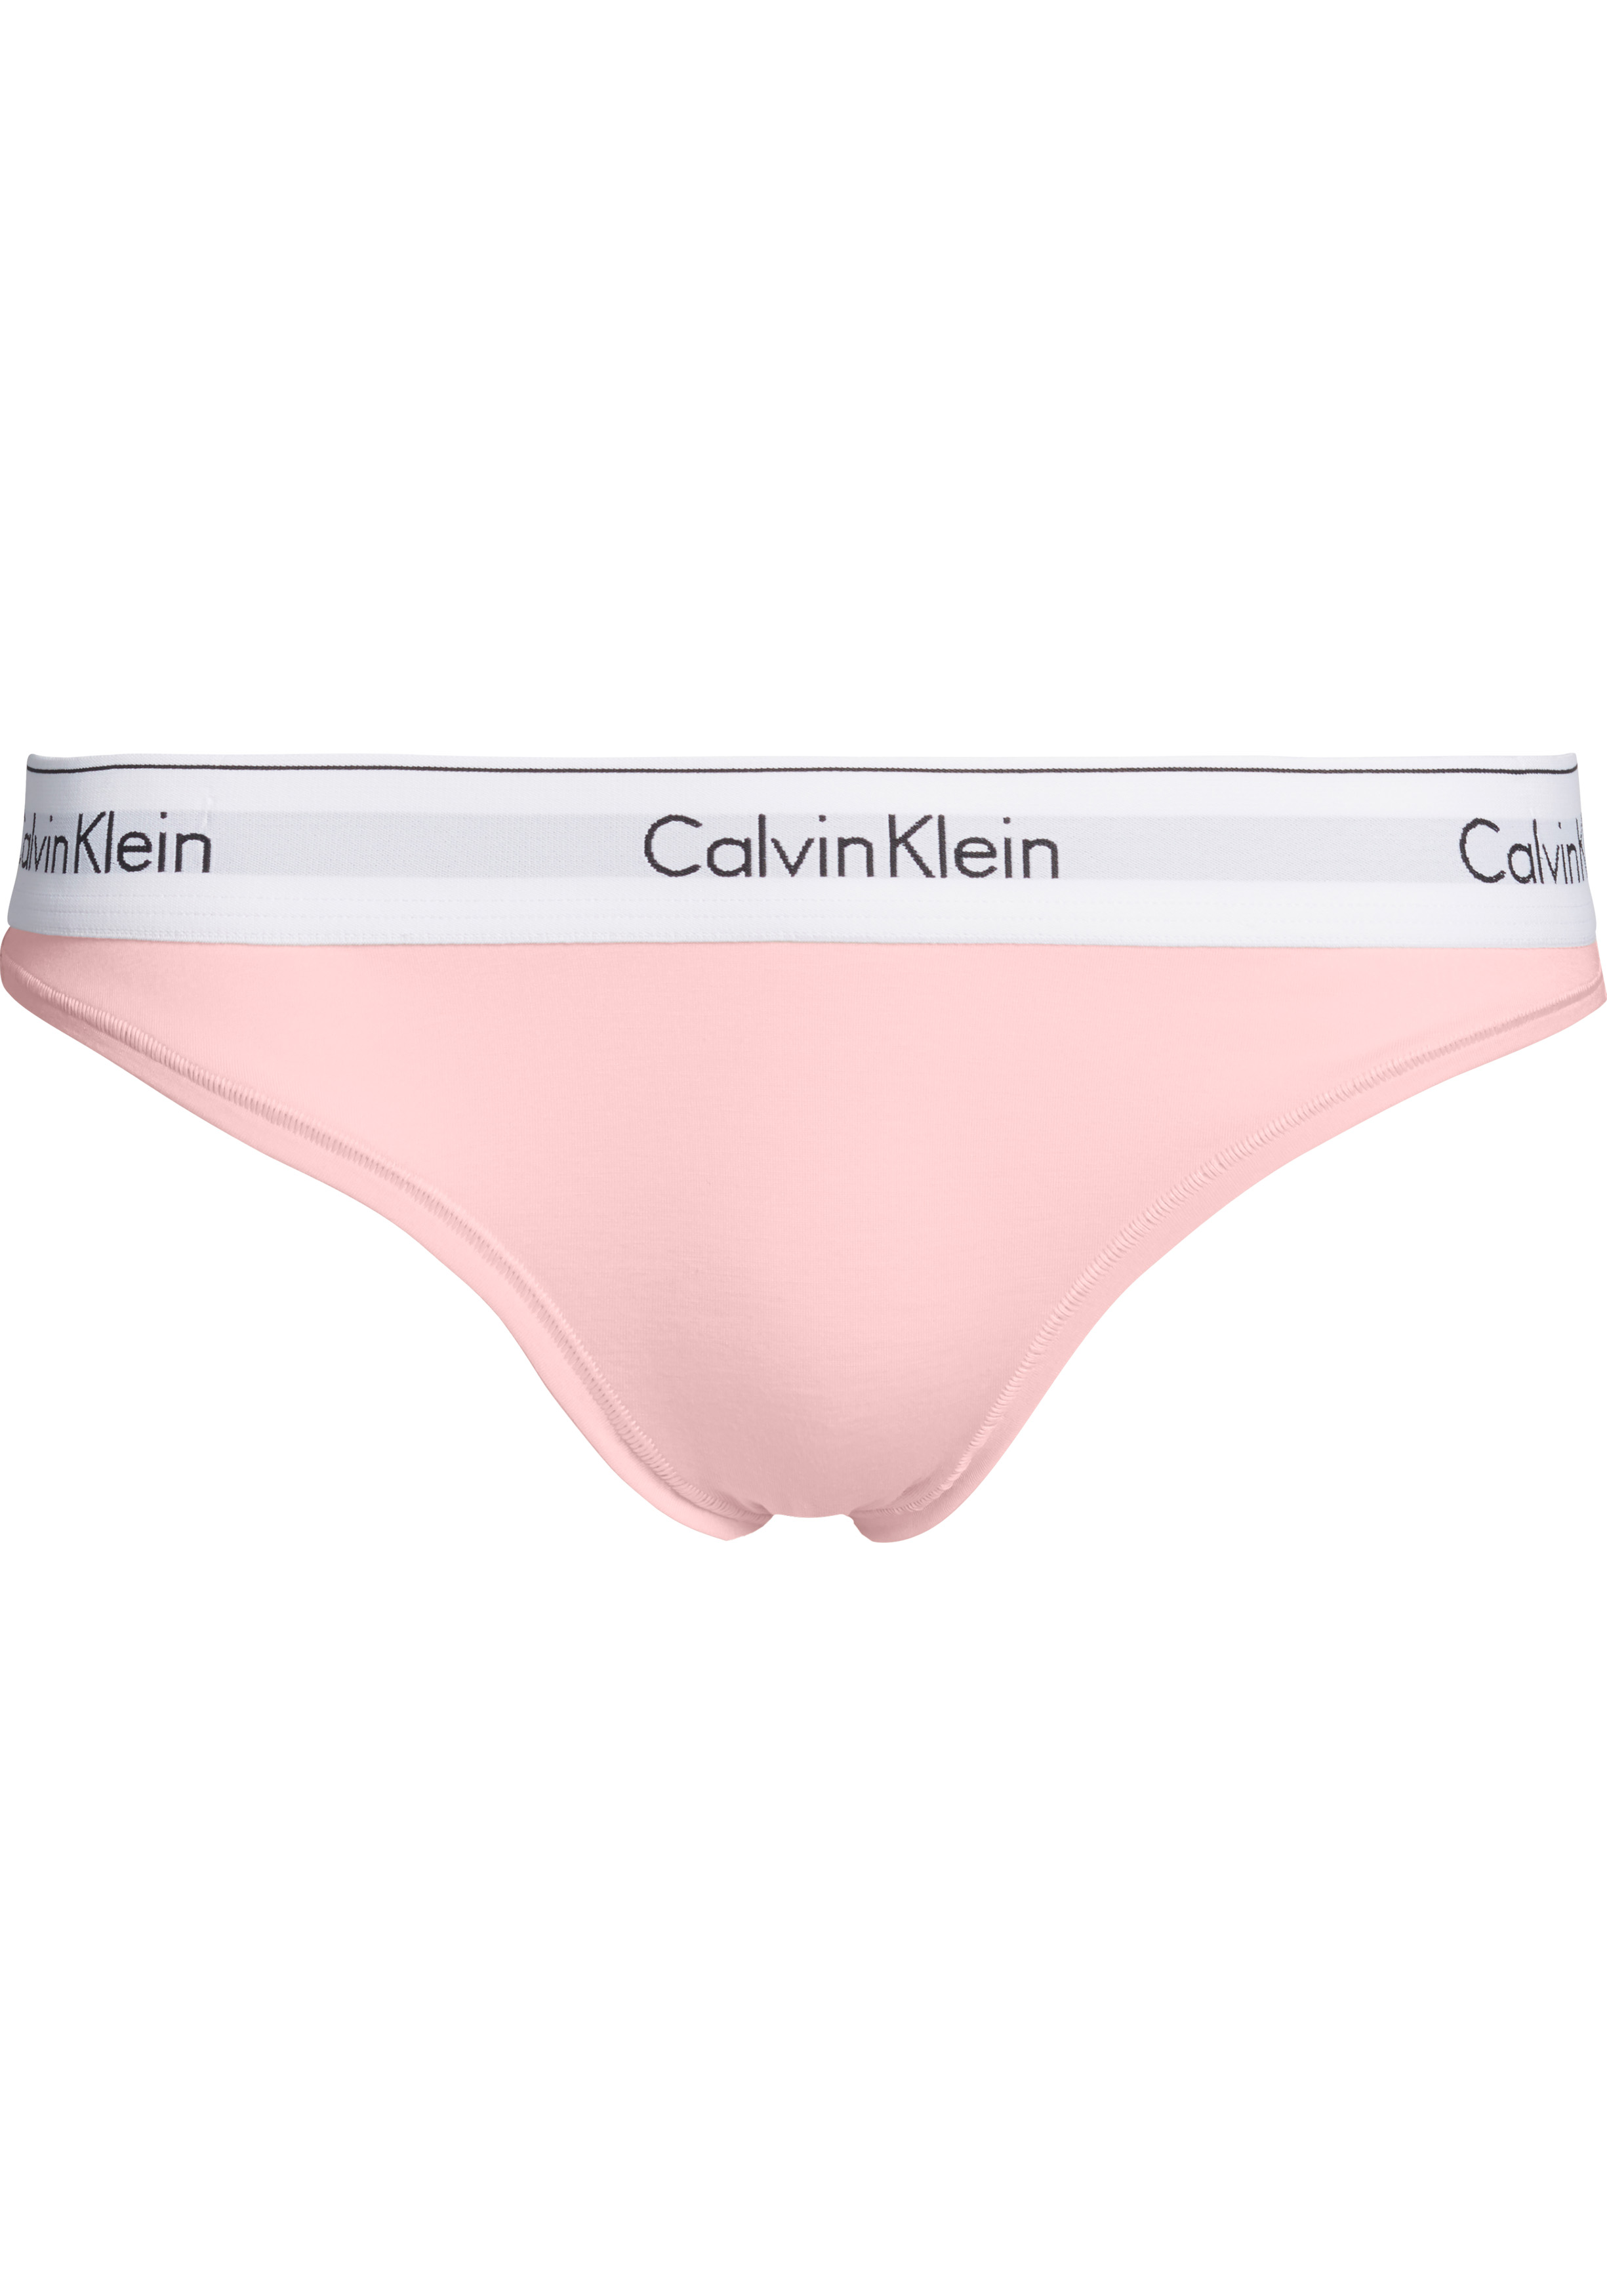 Calvin Klein dames Modern Cotton slip, licht roze